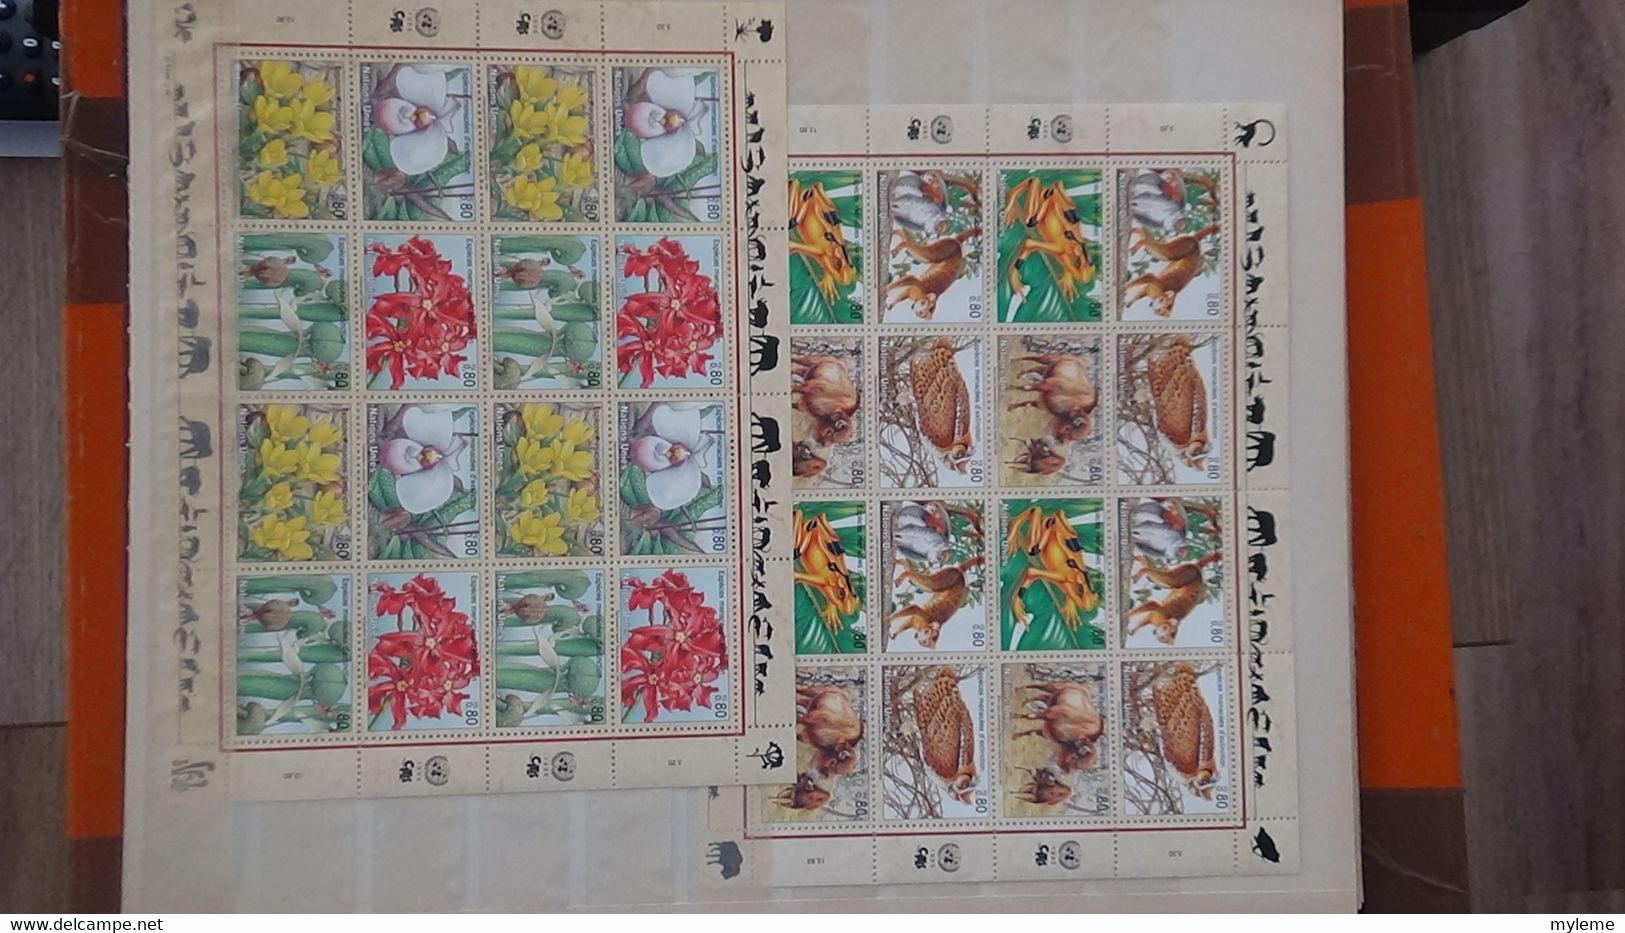 AN81 Collection de blocs et timbres ** des nations Unies . A saisir !!!